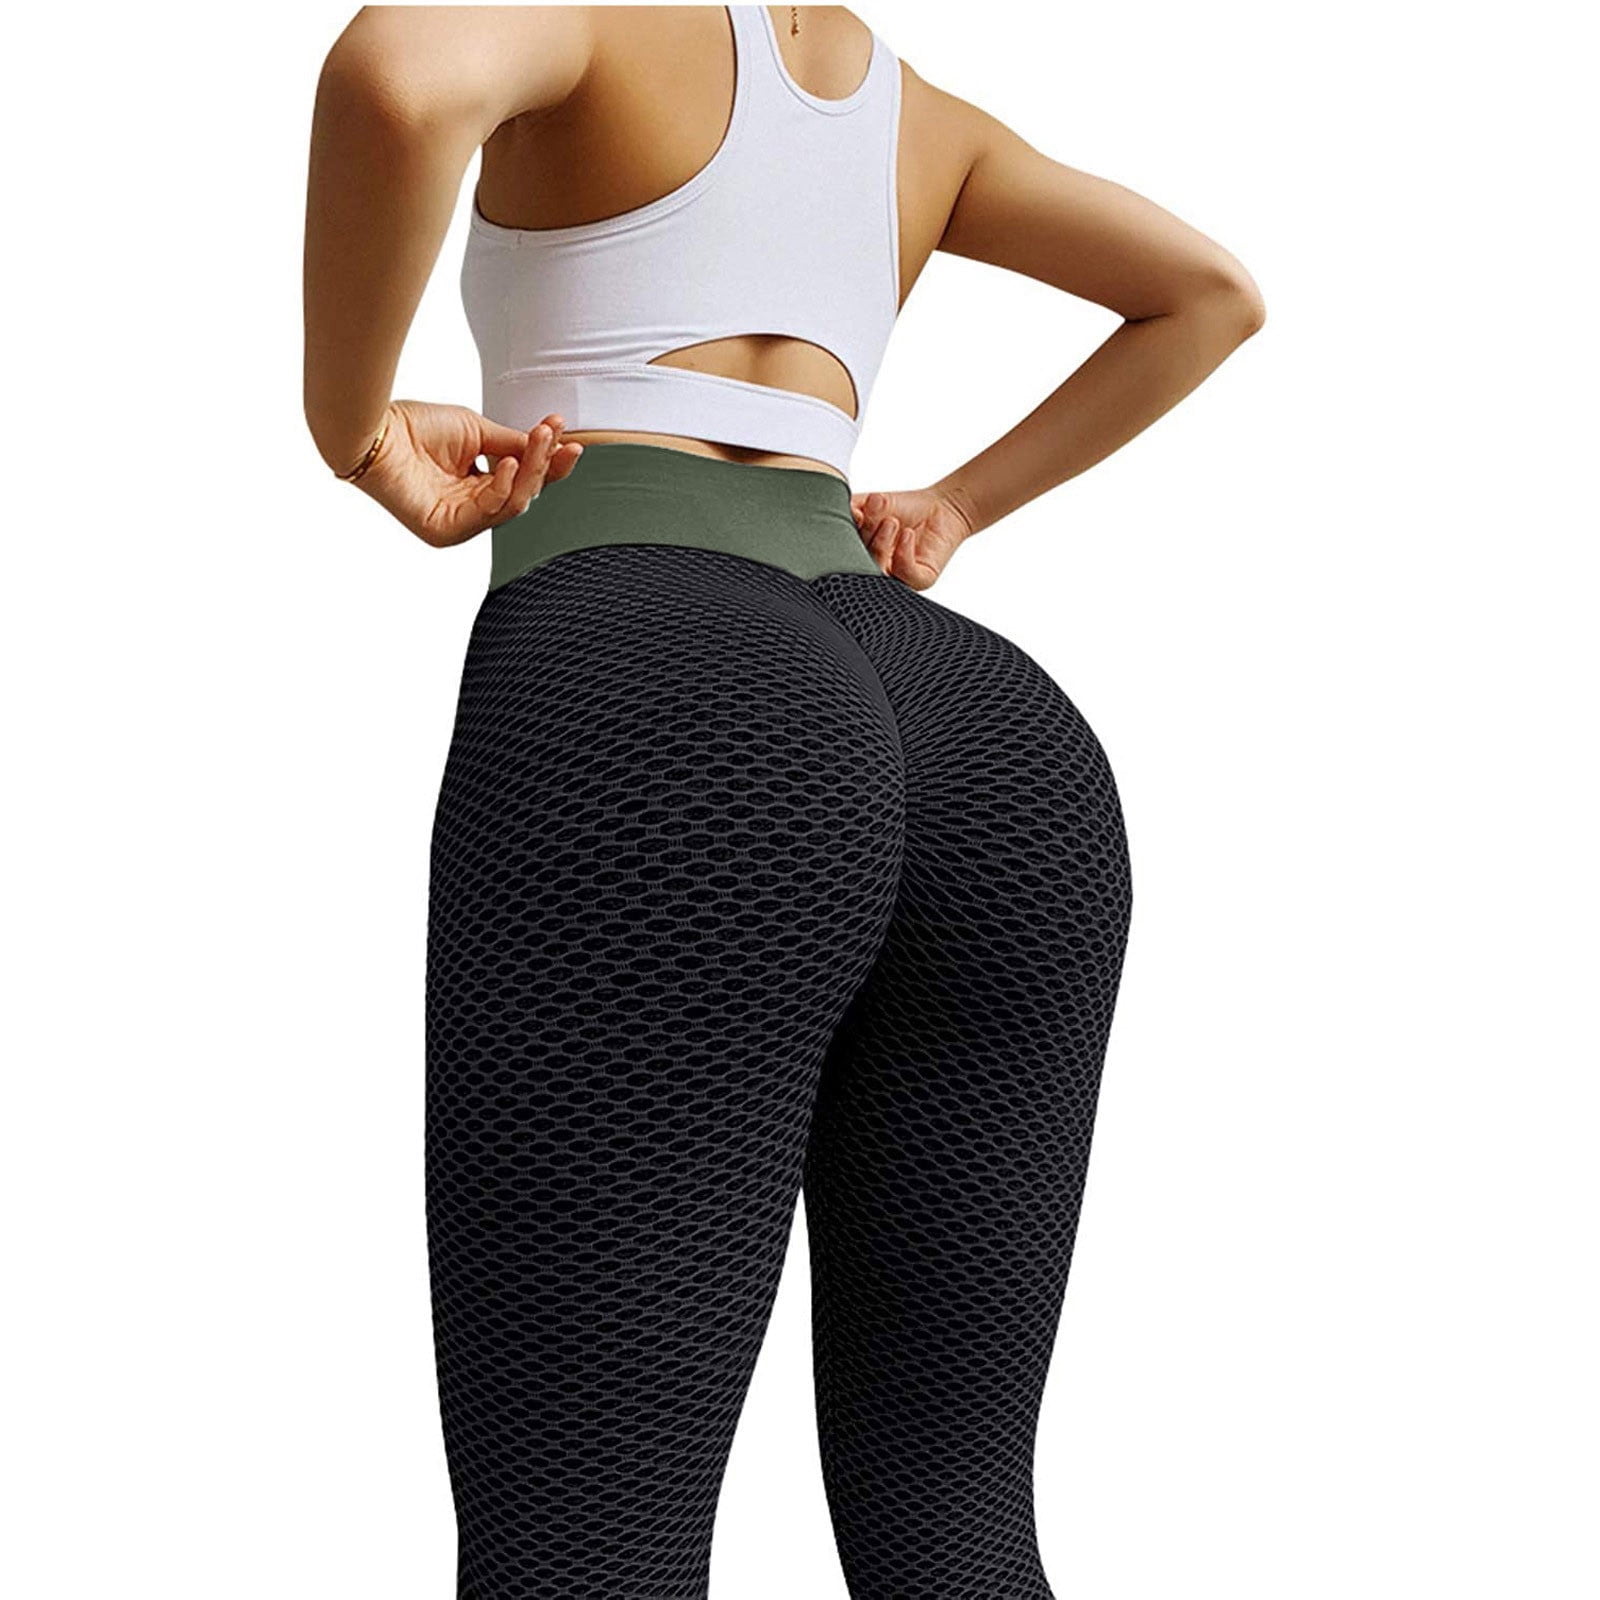 HAPIMO Savings Women's Yoga Pants High Waist Tummy Control